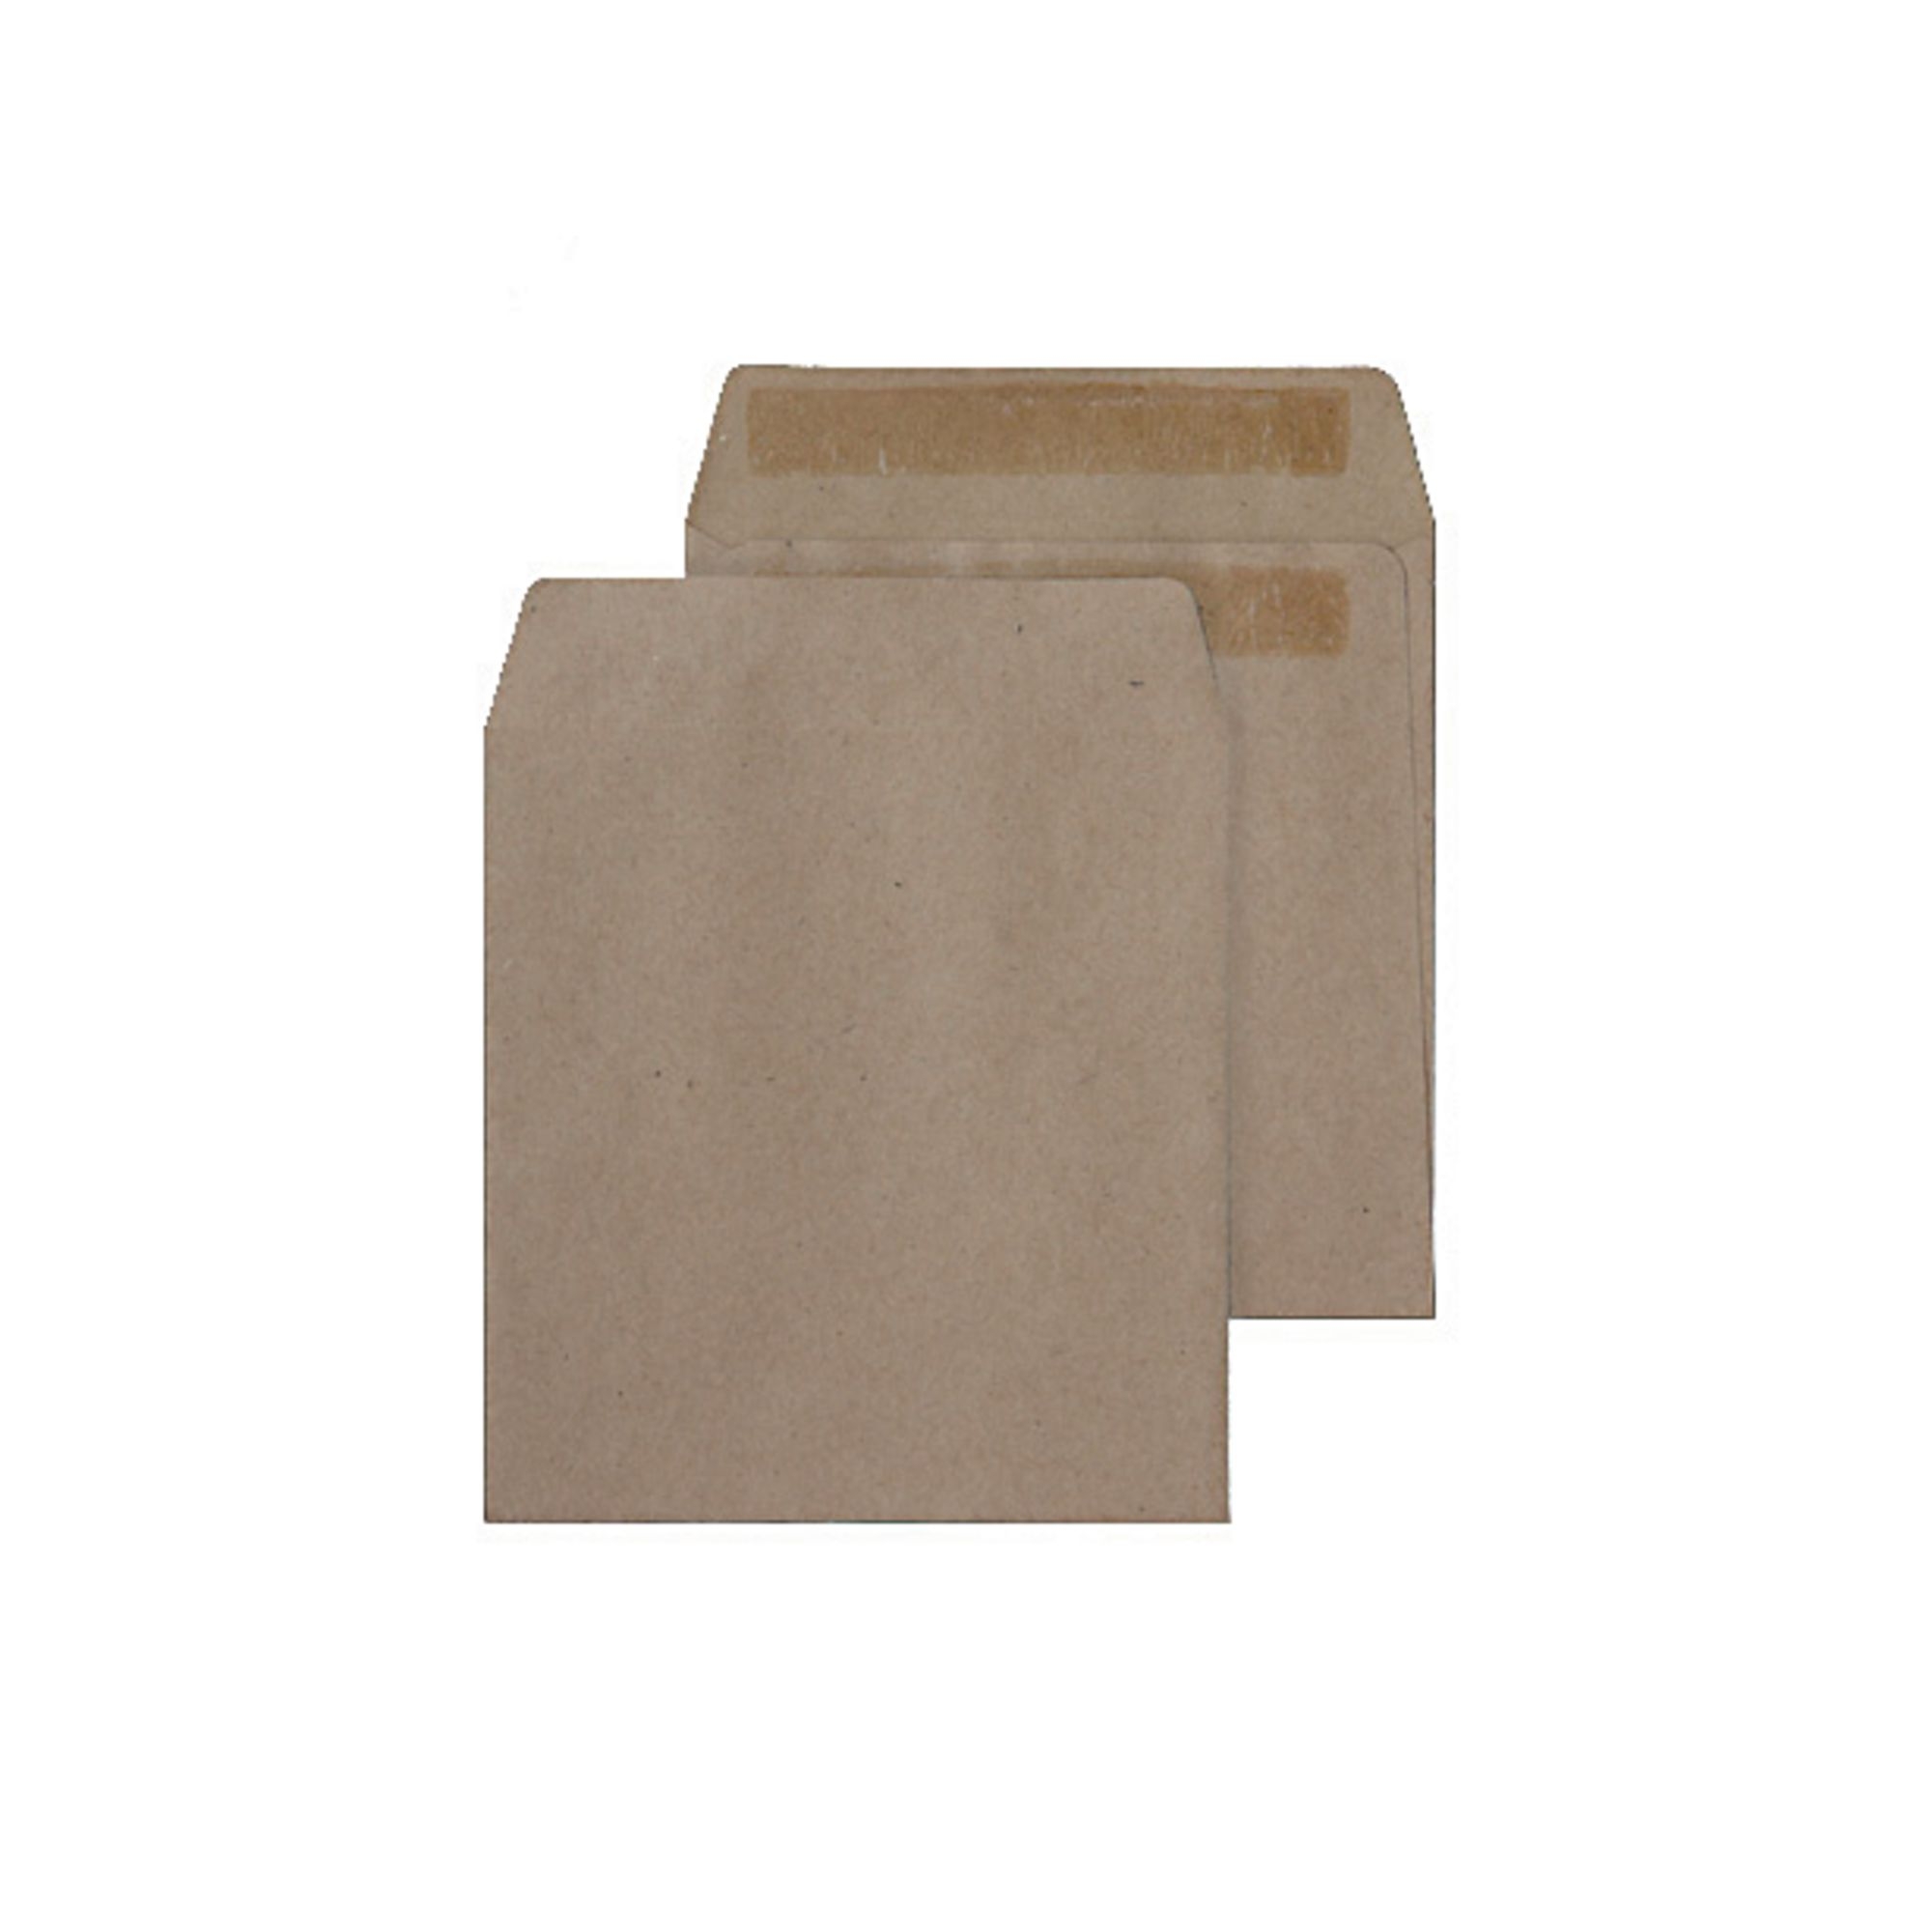 Manilla Buff Gummed Pocket Envelopes - Box of 1000